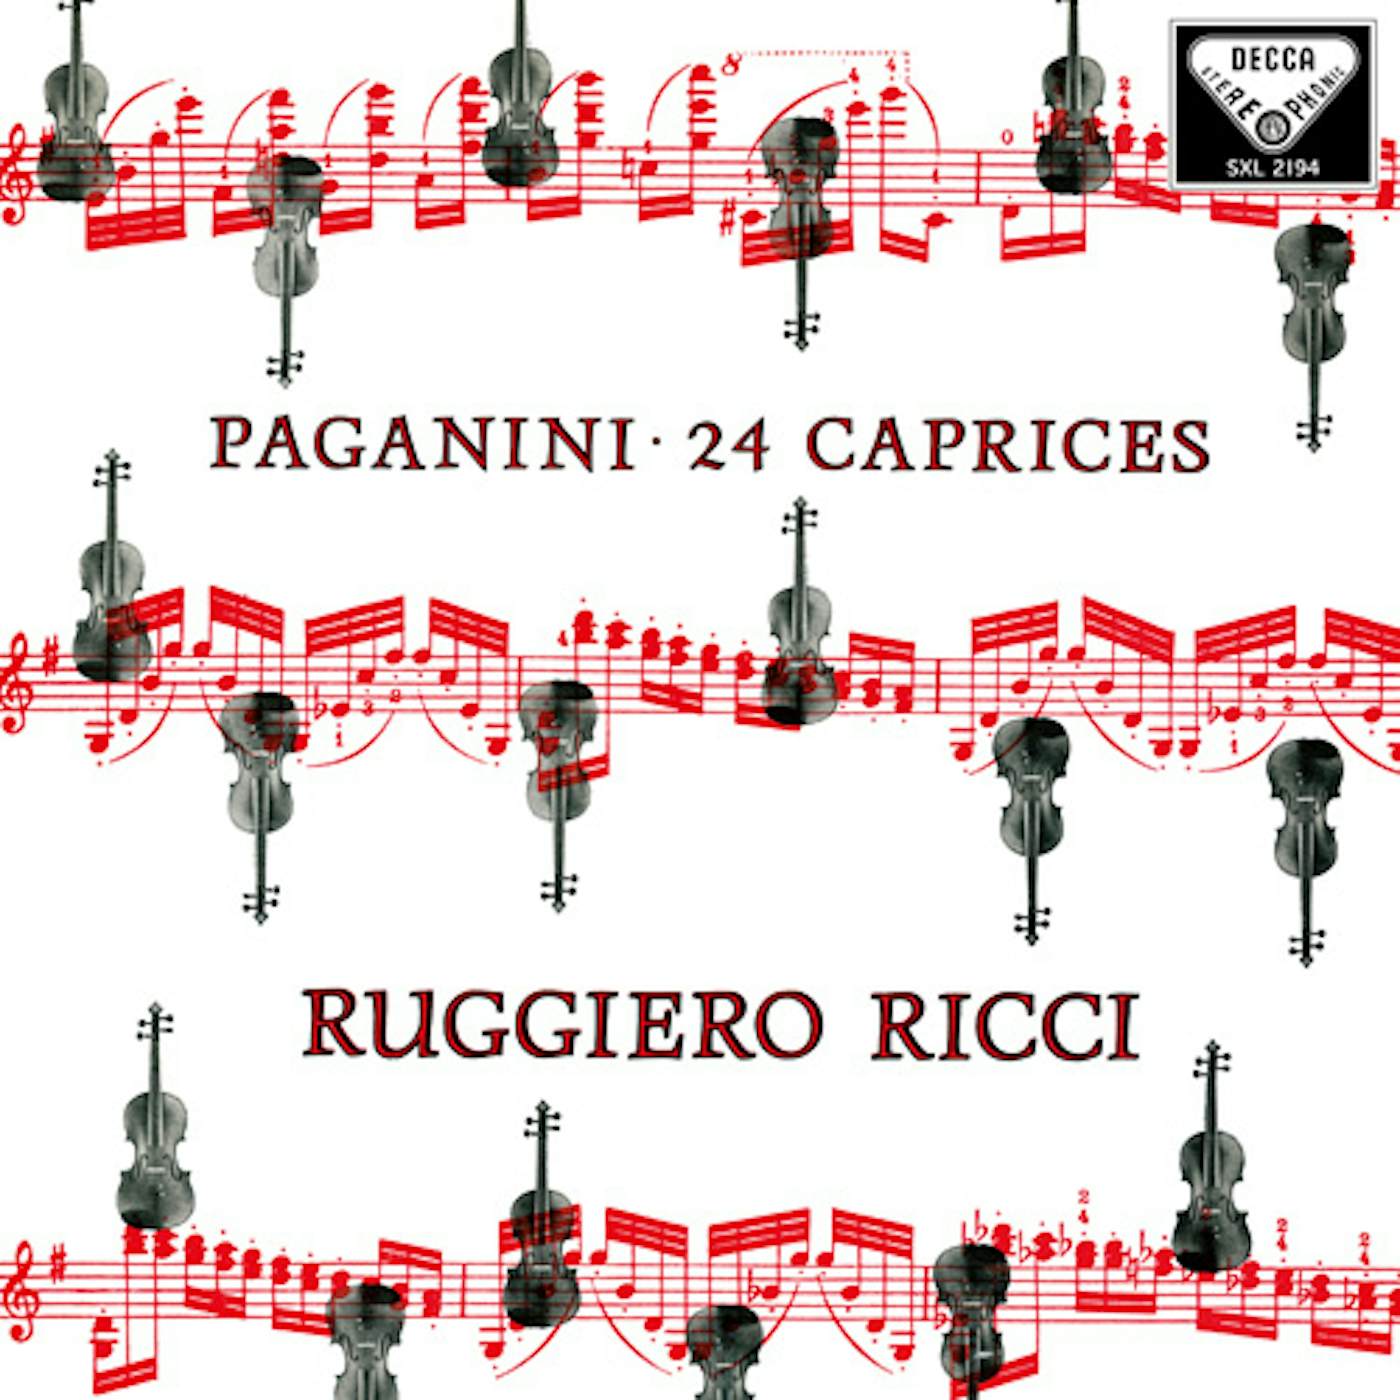 Ruggiero Ricci PAGANINI: 24 CAPRICES OP. 1 Vinyl Record